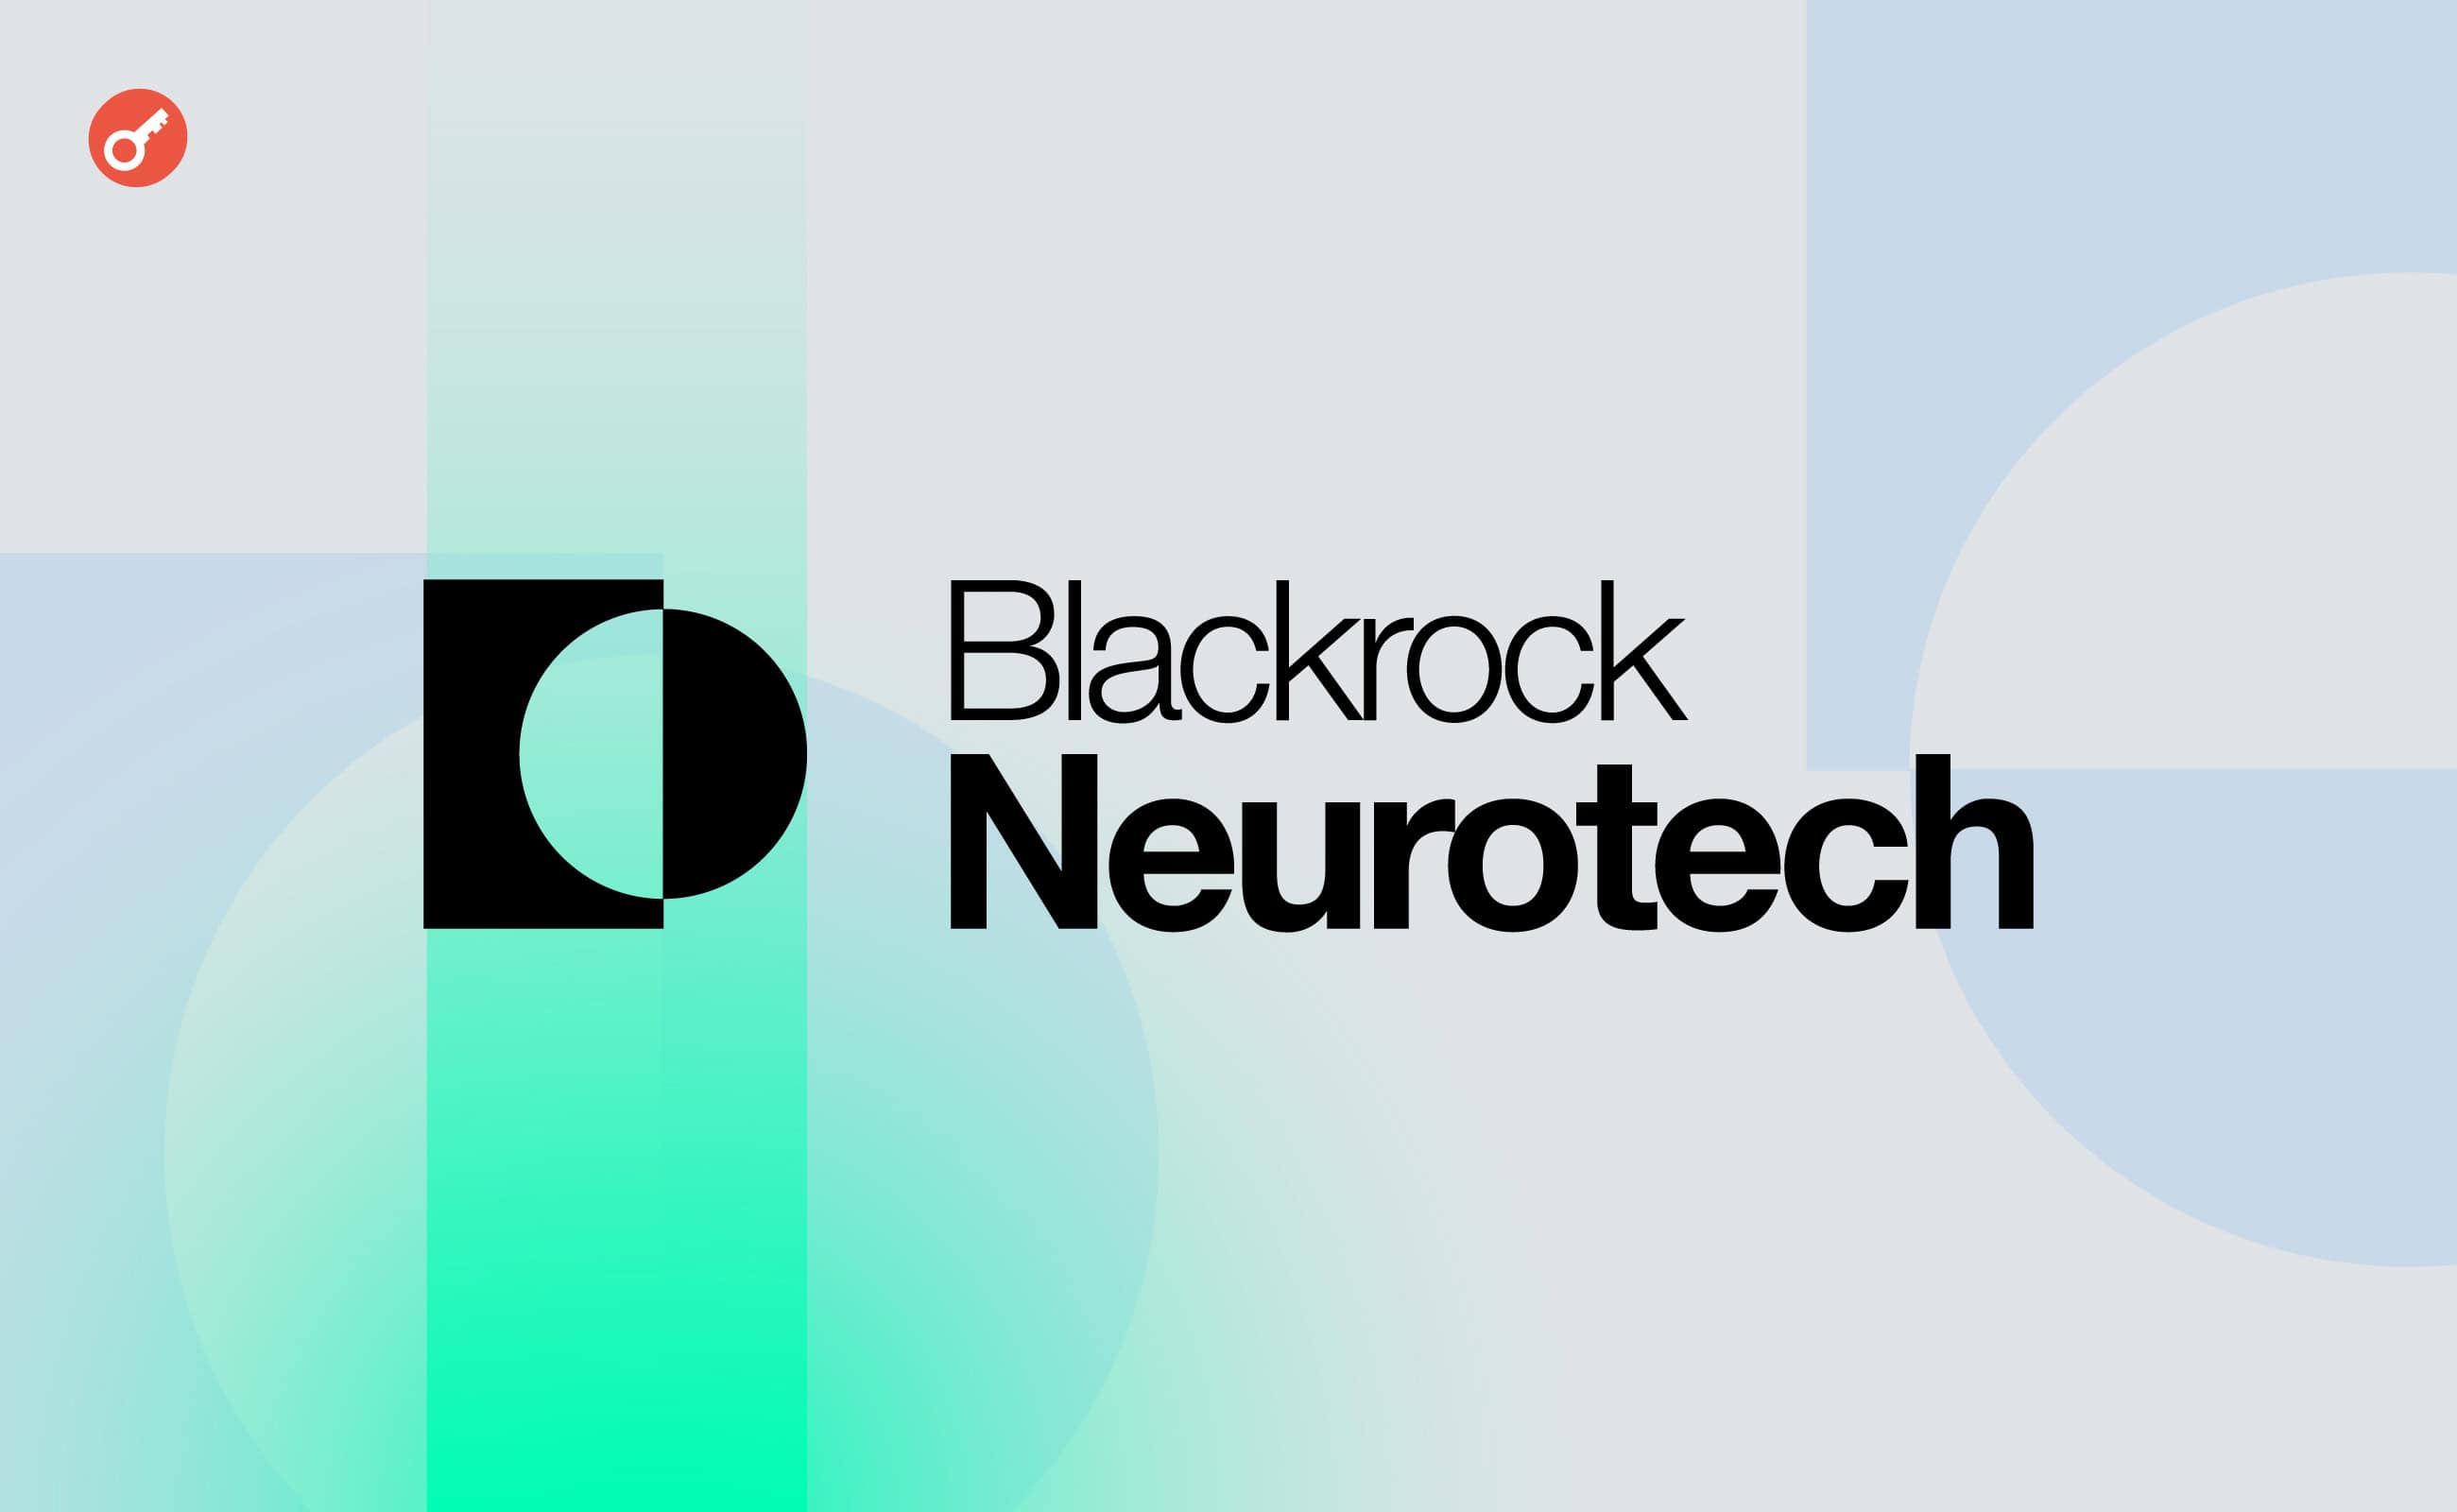 Tether інвестувала $200 млн у біотехнологічну компанію Blackrock Neurotech. Головний колаж новини.